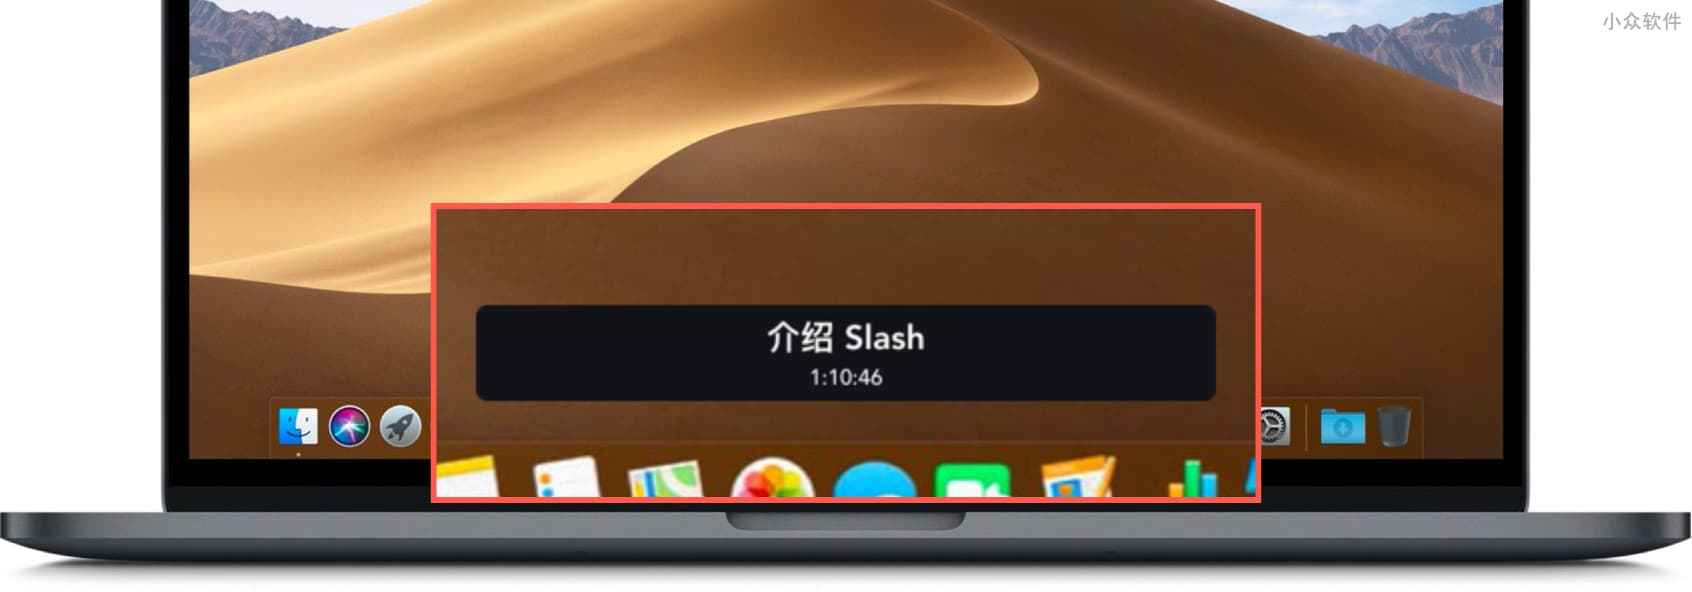 Slash - 为任务计时、提醒，让你更新专心、高效的任务管理工具[macOS] 6